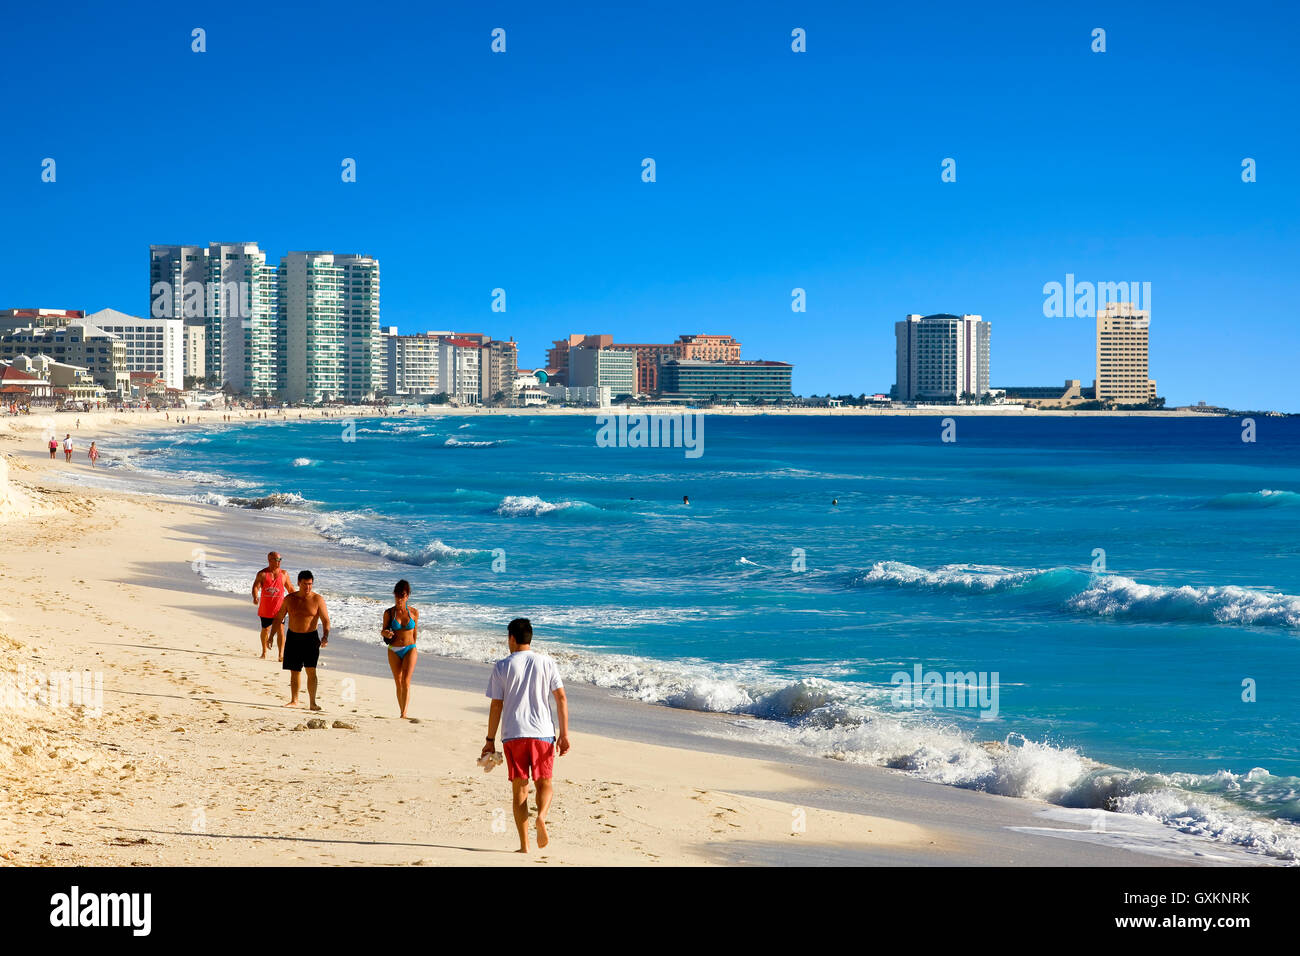 Cancun beach, Yucatan, Mexico Stock Photo